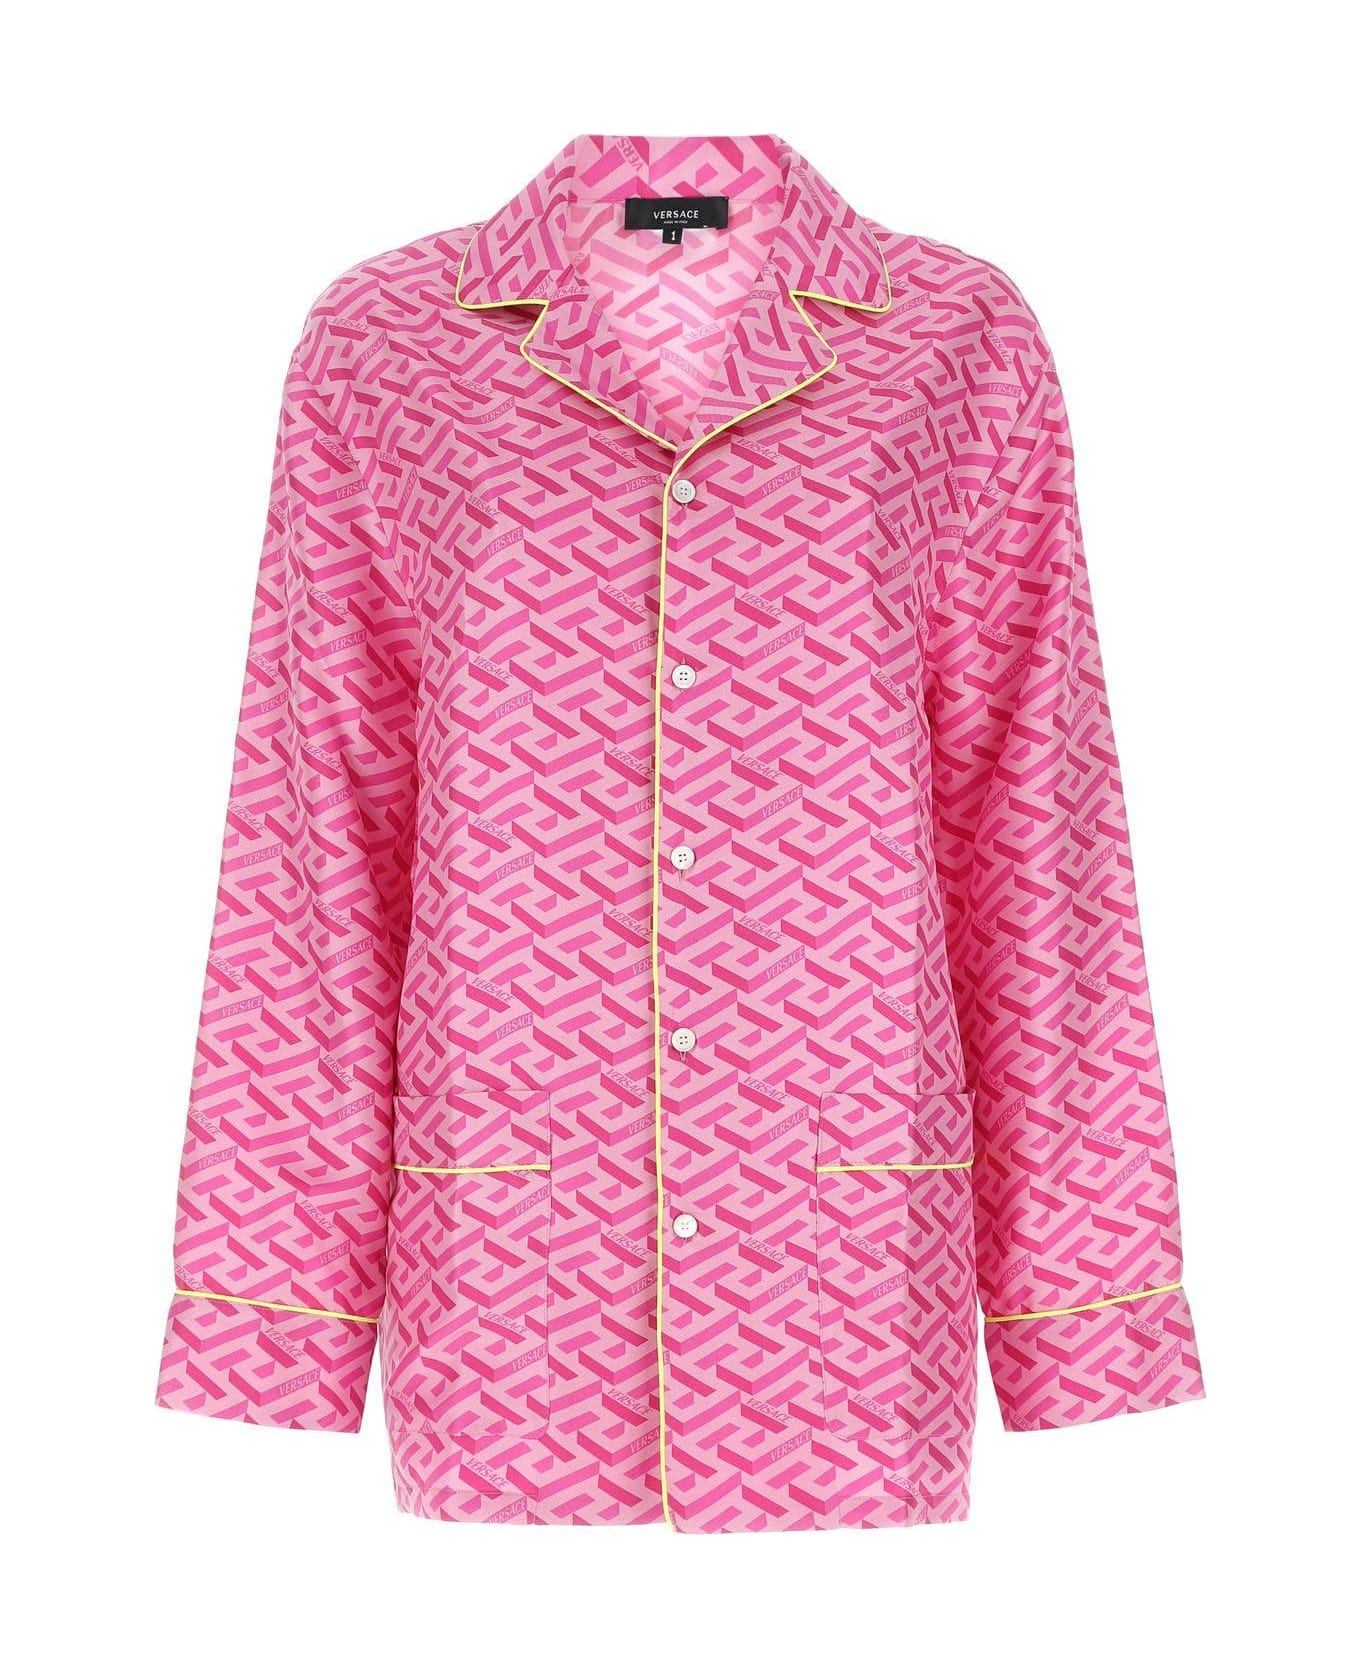 Versace Printed Satin Pijama Shirt - PINK ショーツ